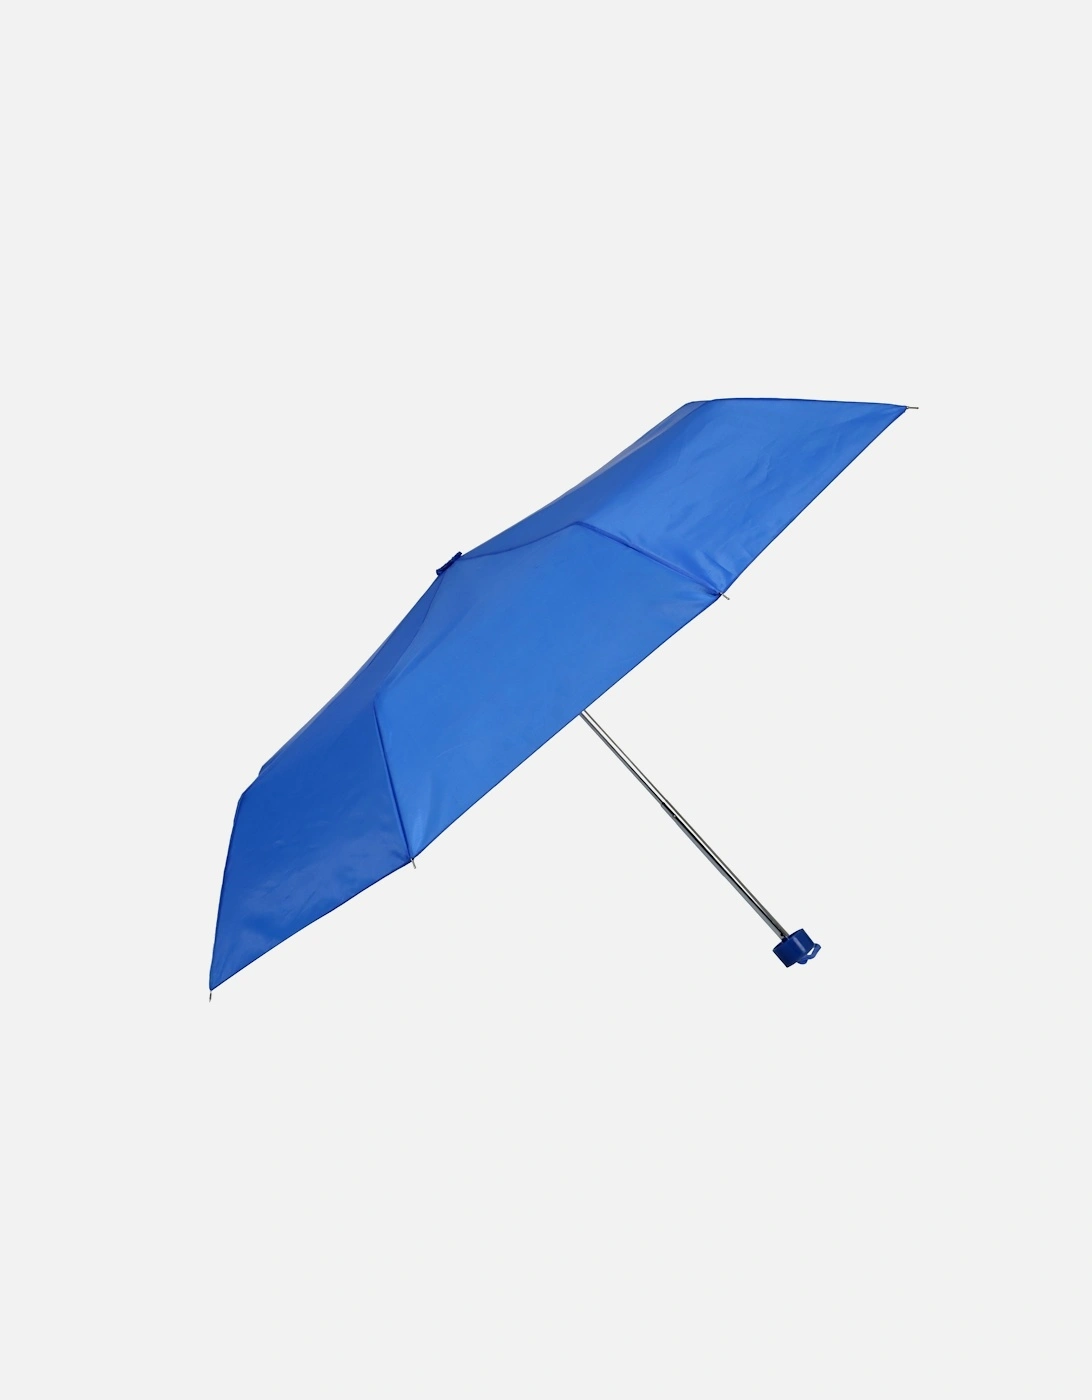 19in Folding Umbrella